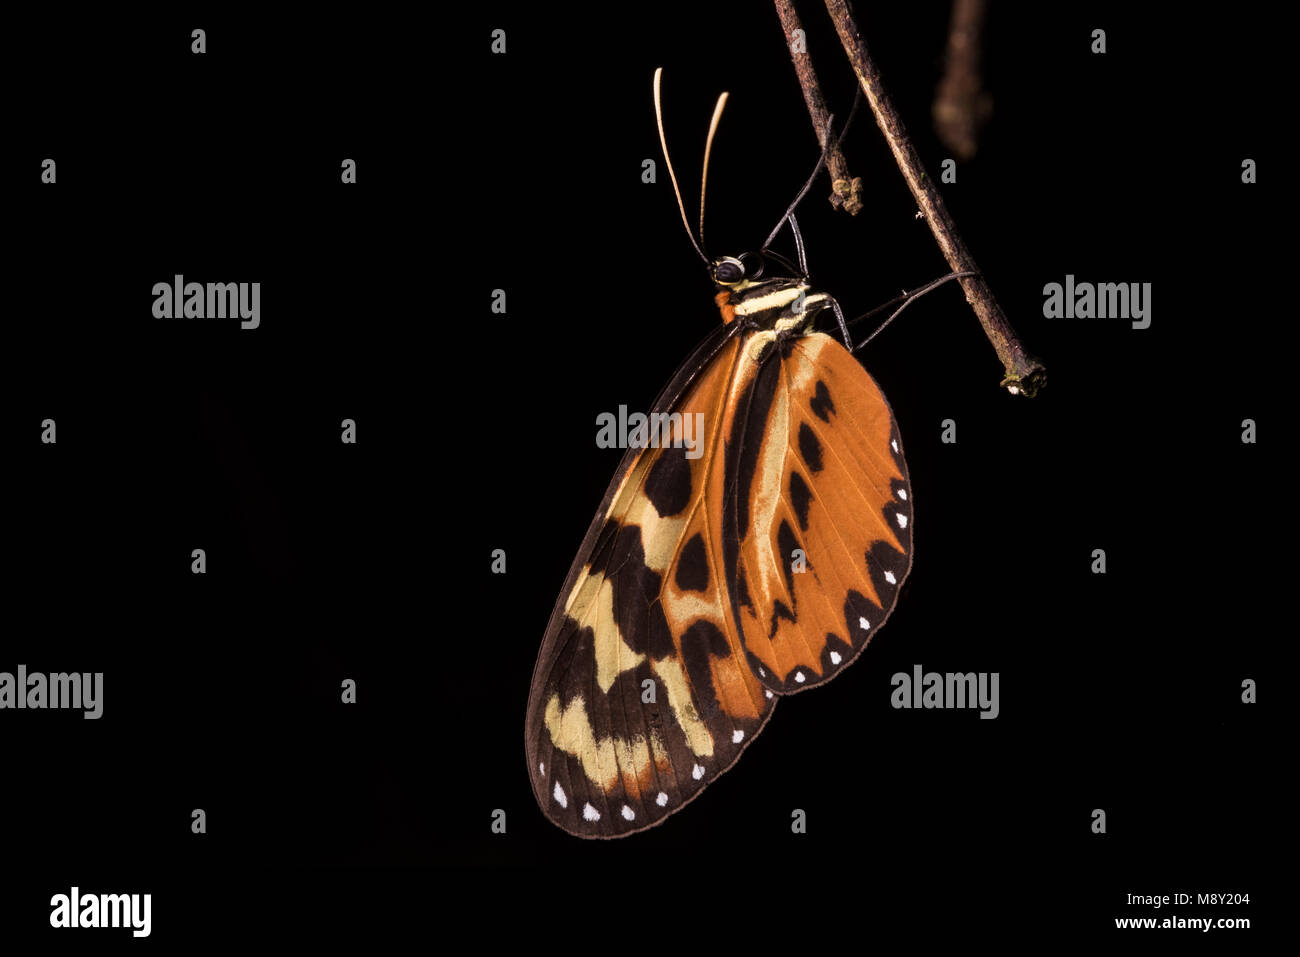 Una especie de Heliconius butterfly, conocido más comúnmente como longwings. Estas mariposas han sido estudiados ampliamente para ayudar a comprender la mímica. Foto de stock